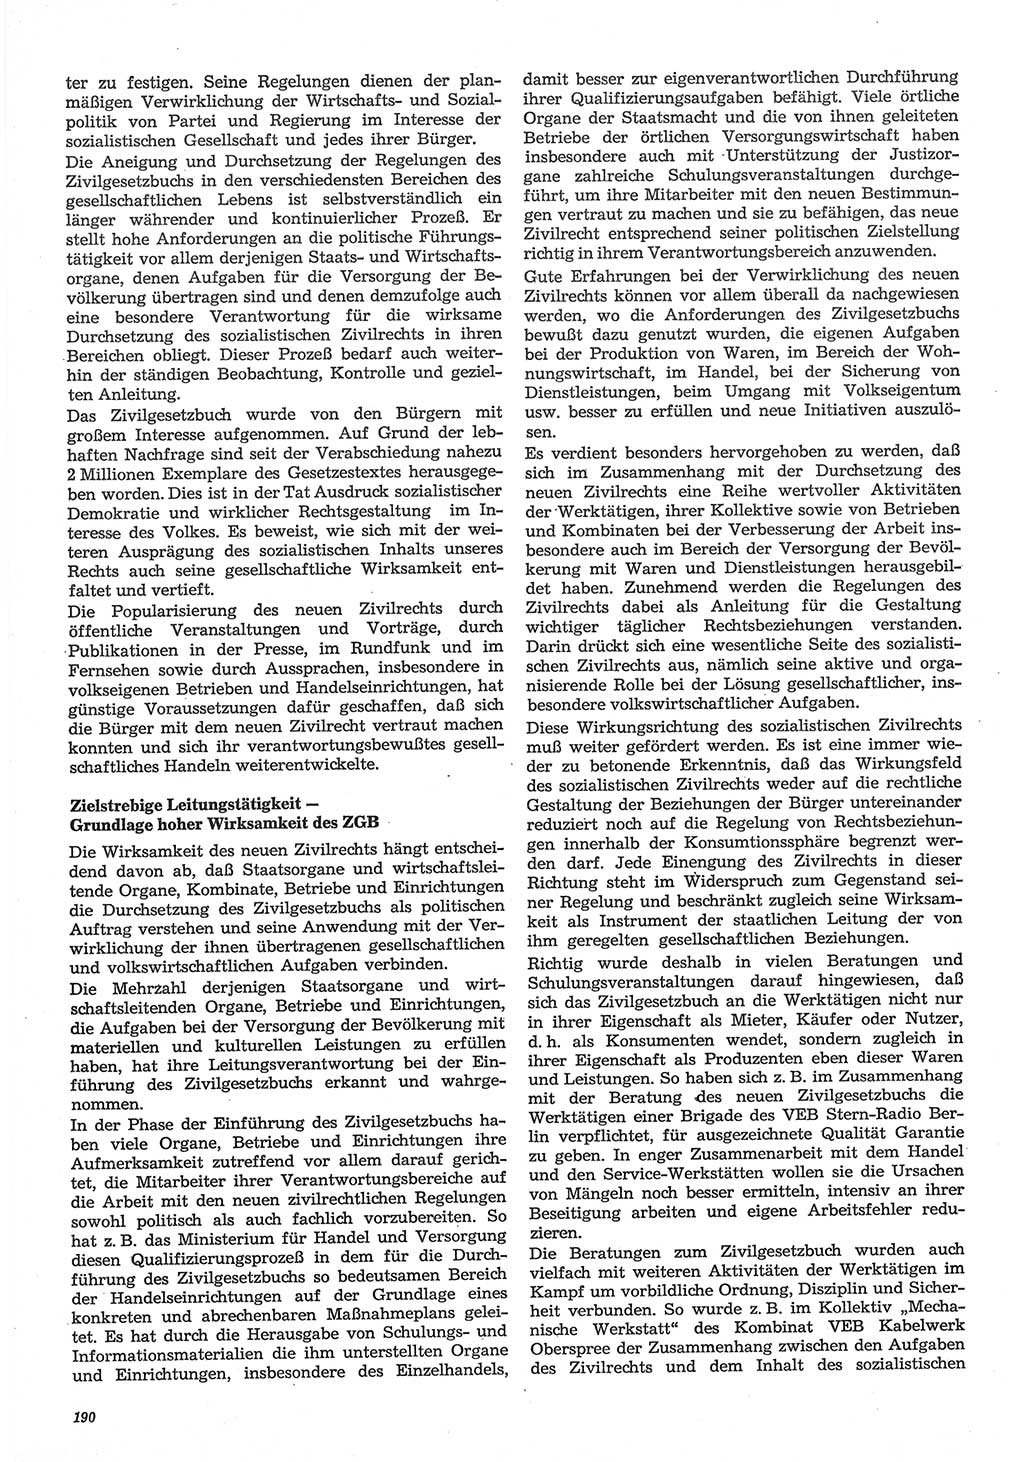 Neue Justiz (NJ), Zeitschrift für Recht und Rechtswissenschaft-Zeitschrift, sozialistisches Recht und Gesetzlichkeit, 31. Jahrgang 1977, Seite 190 (NJ DDR 1977, S. 190)